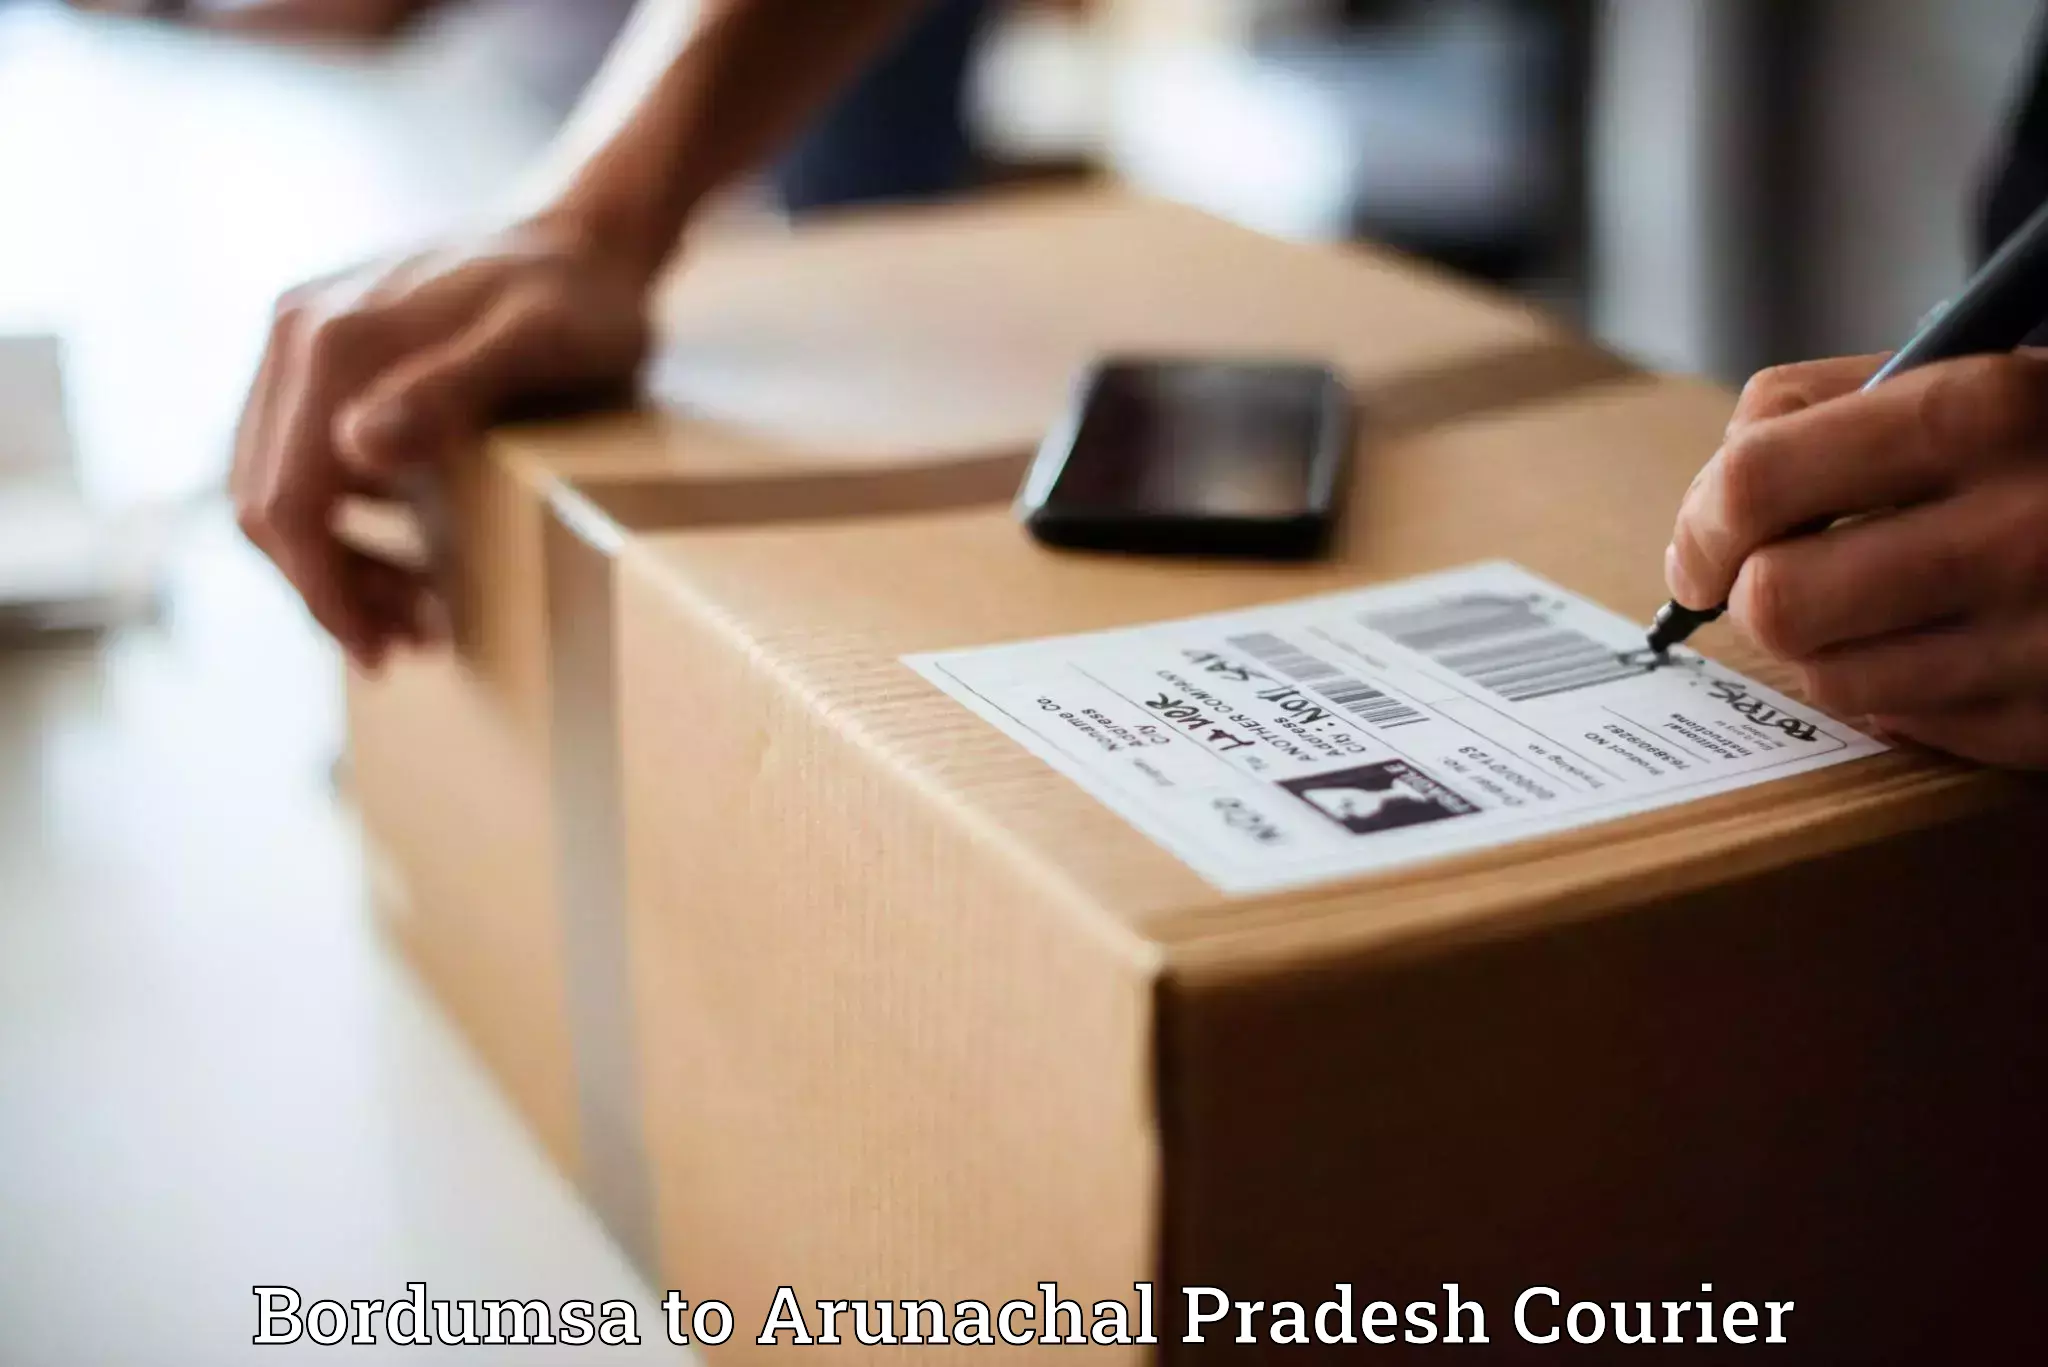 Urgent courier needs Bordumsa to Arunachal Pradesh